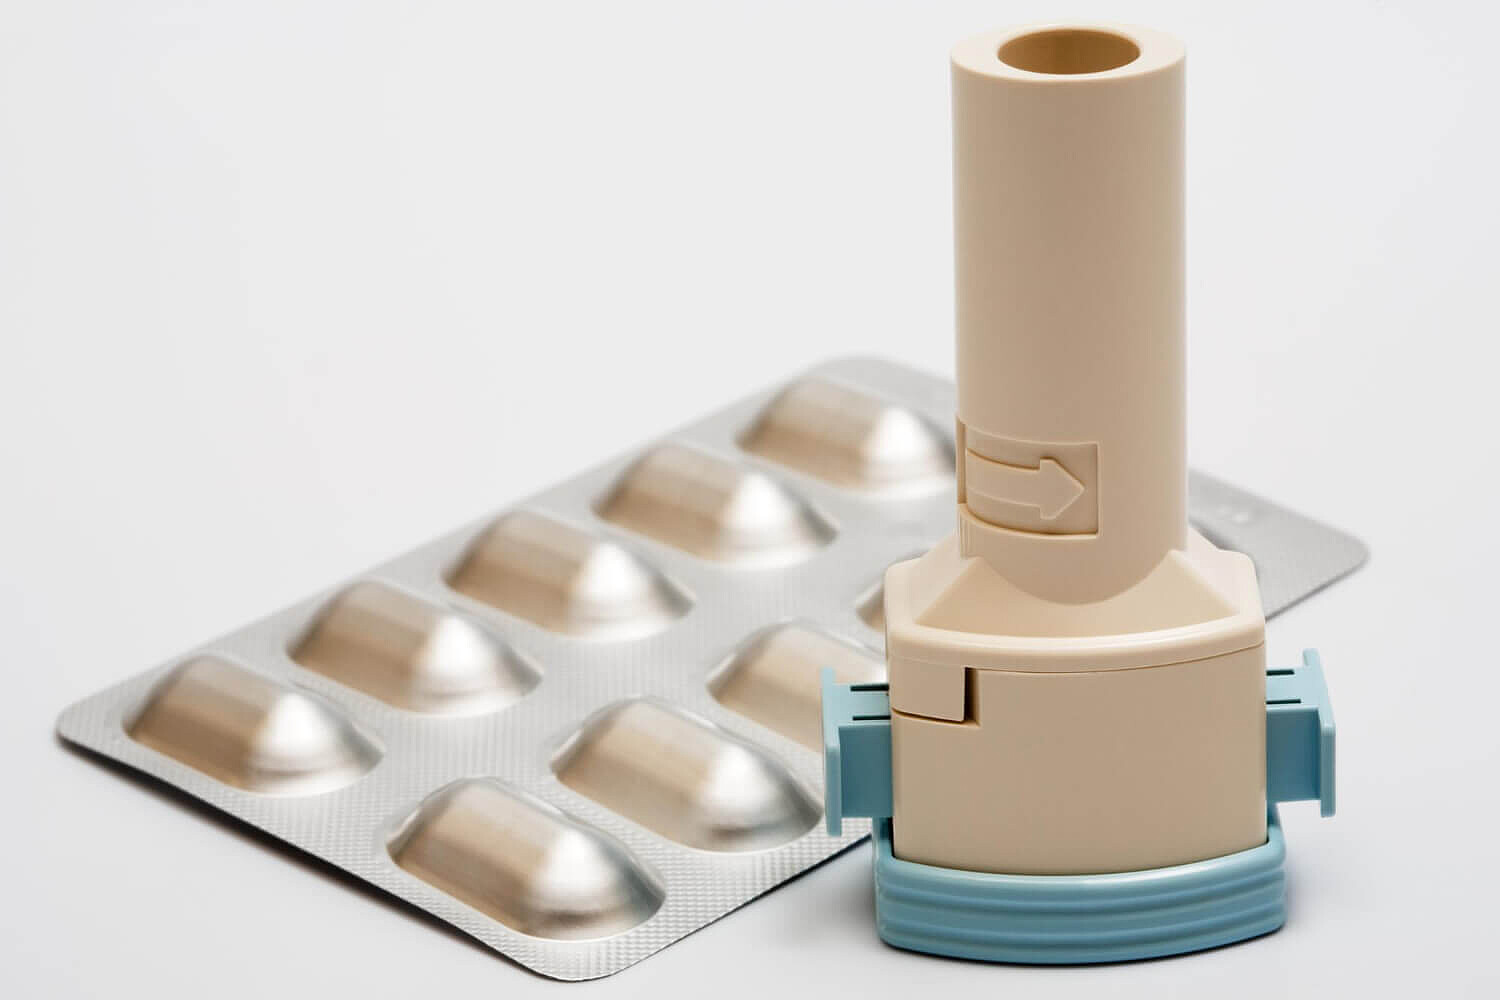 inhalator-proszkowy-z-kapsulkami-do-astmy.jpg [45.19 KB]